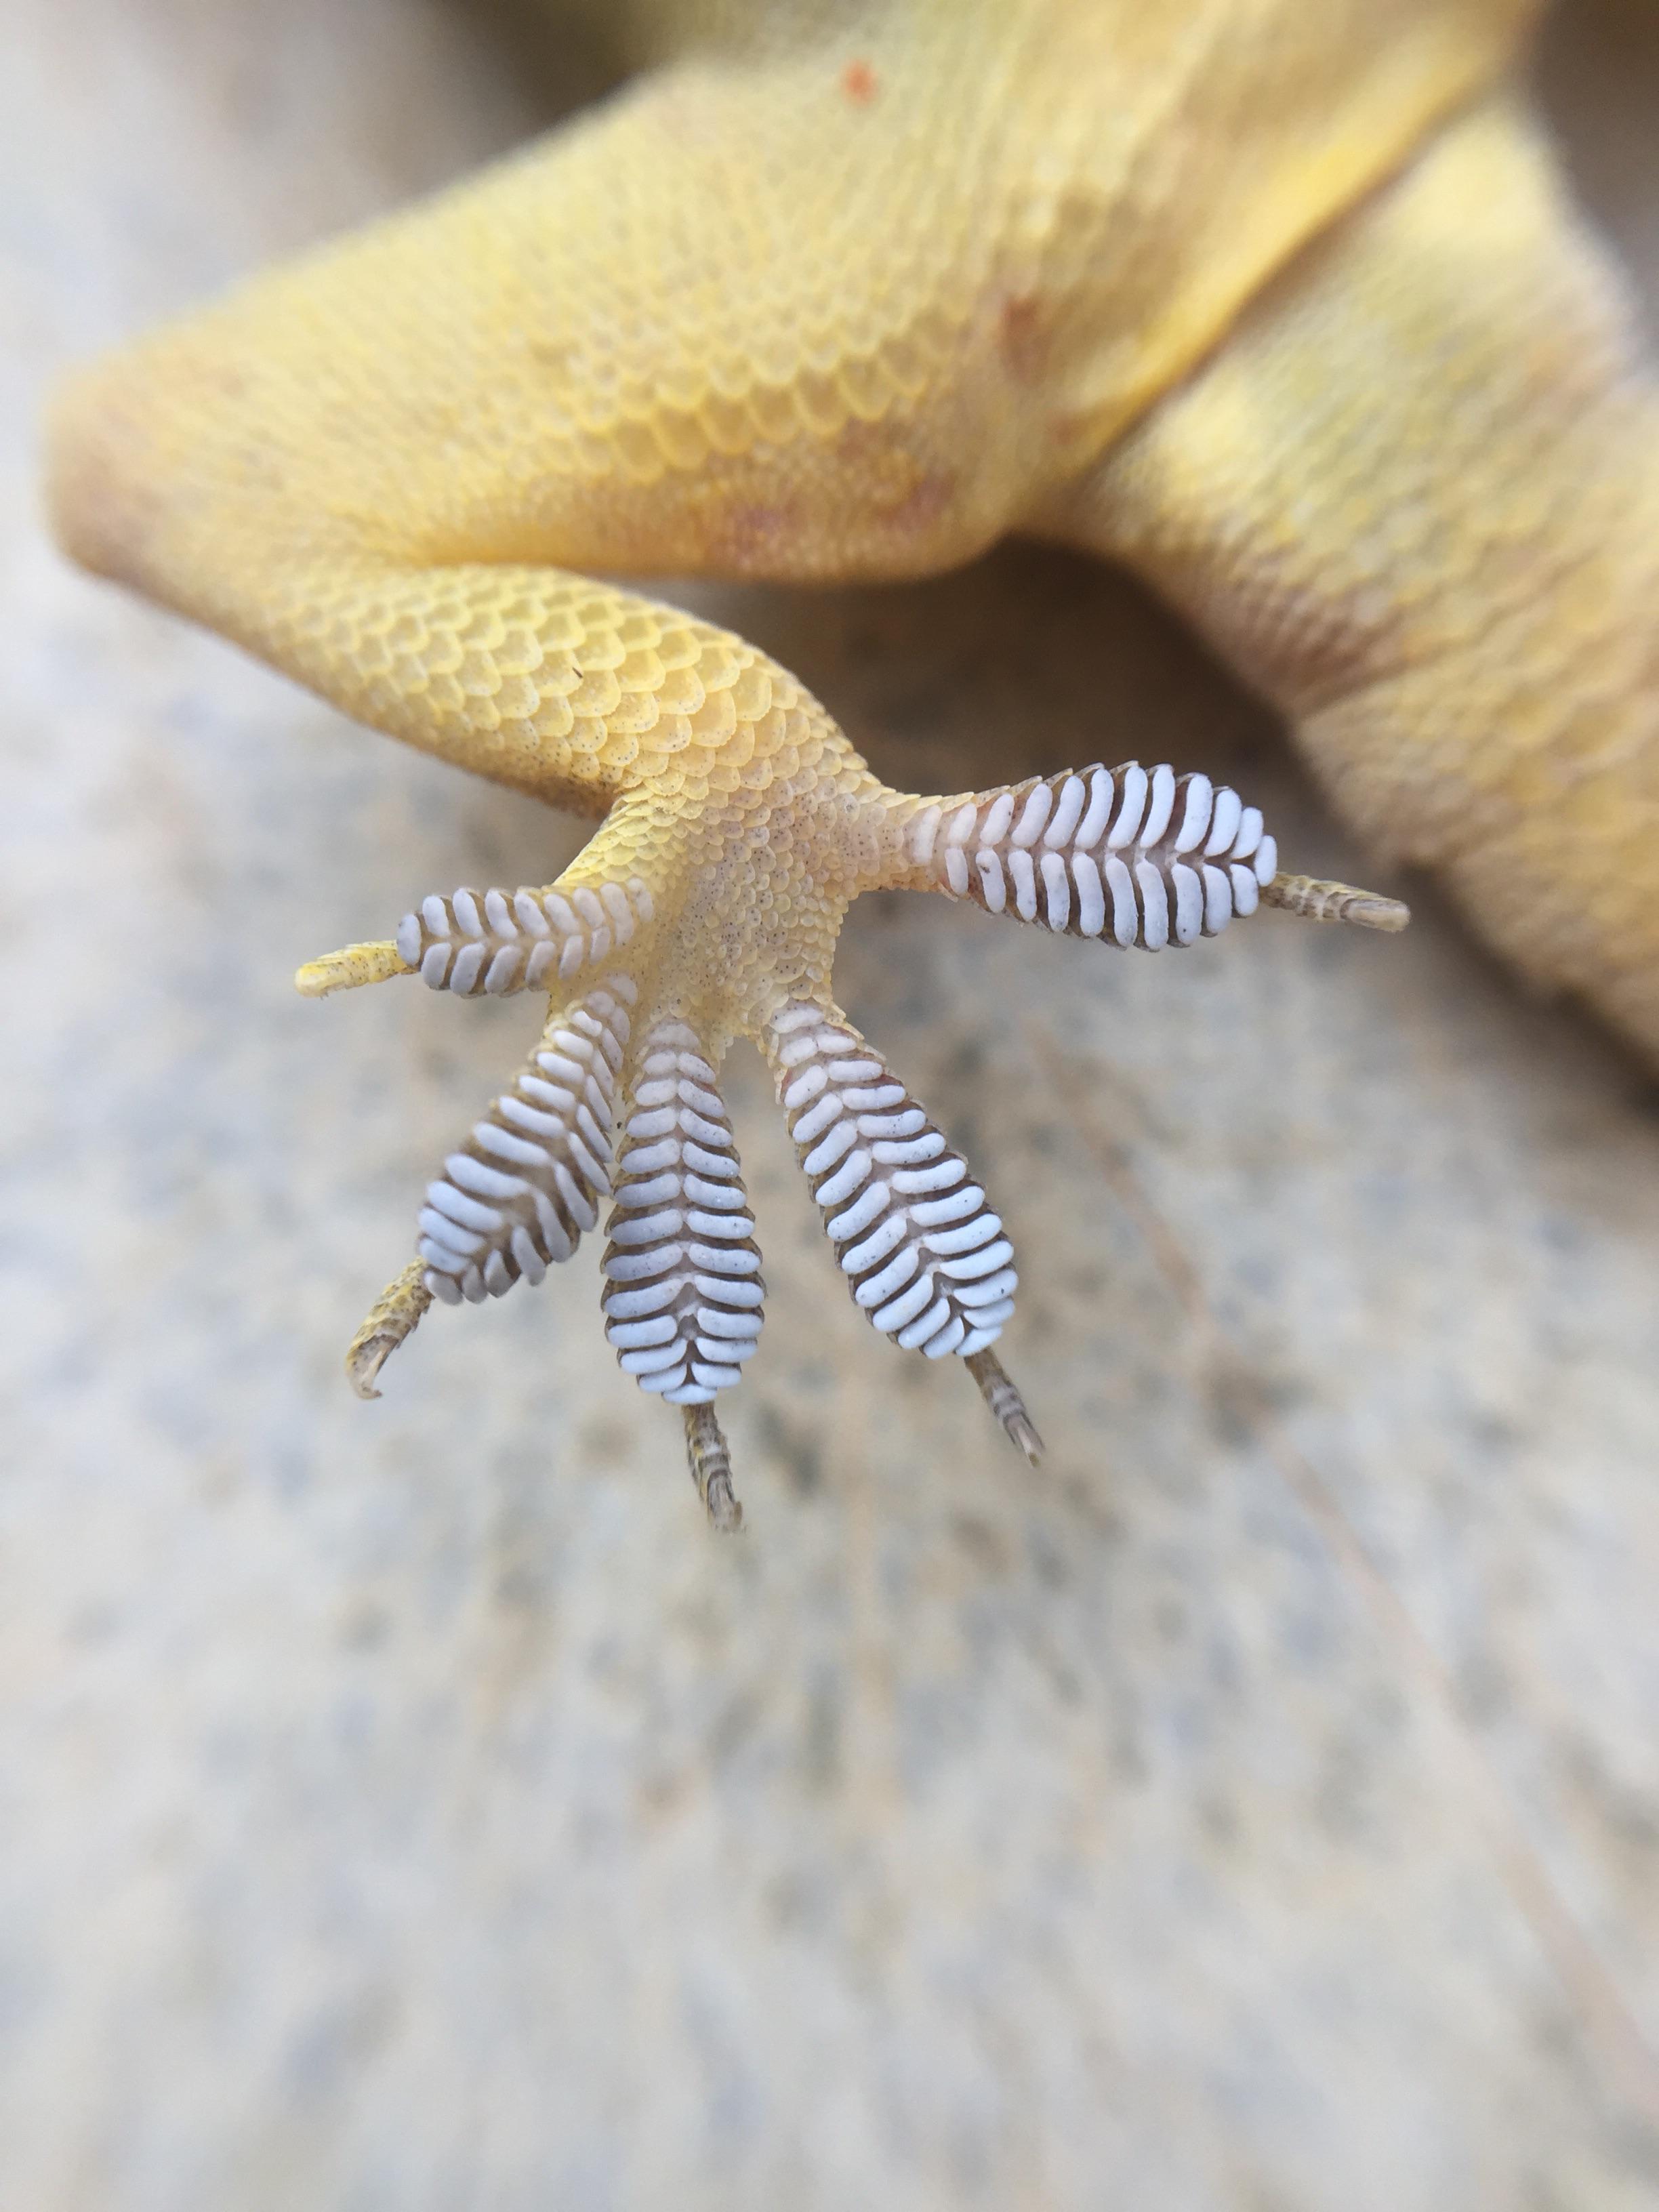 La patte d'un gecko